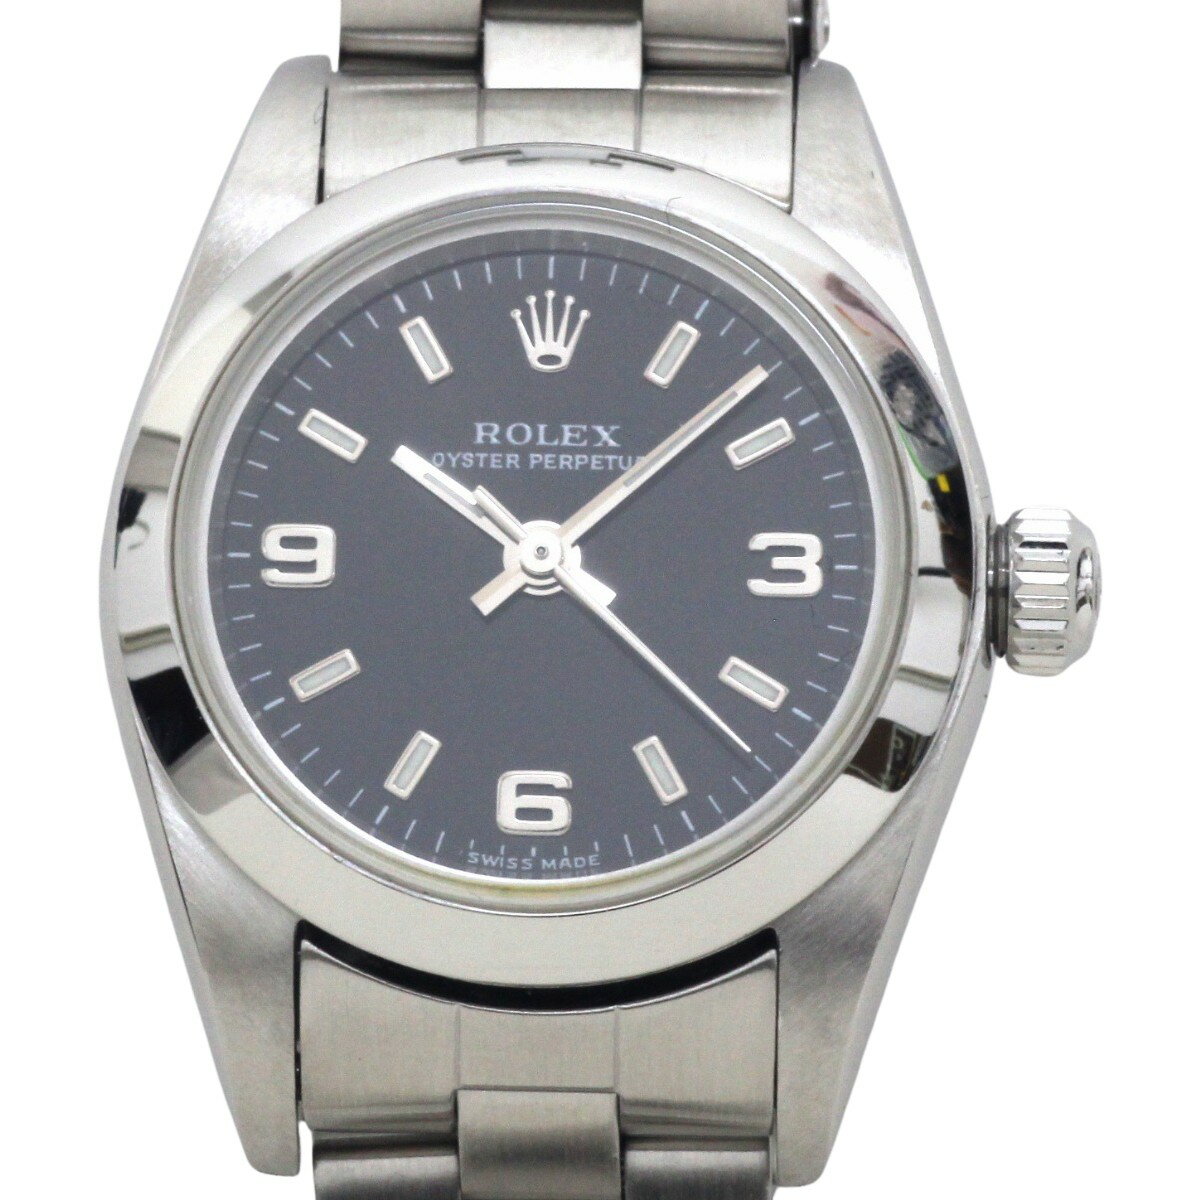 $$【中古】ROLEX ロレックス パーペチュアル レディース 自動巻き 腕時計 76080 Bランク